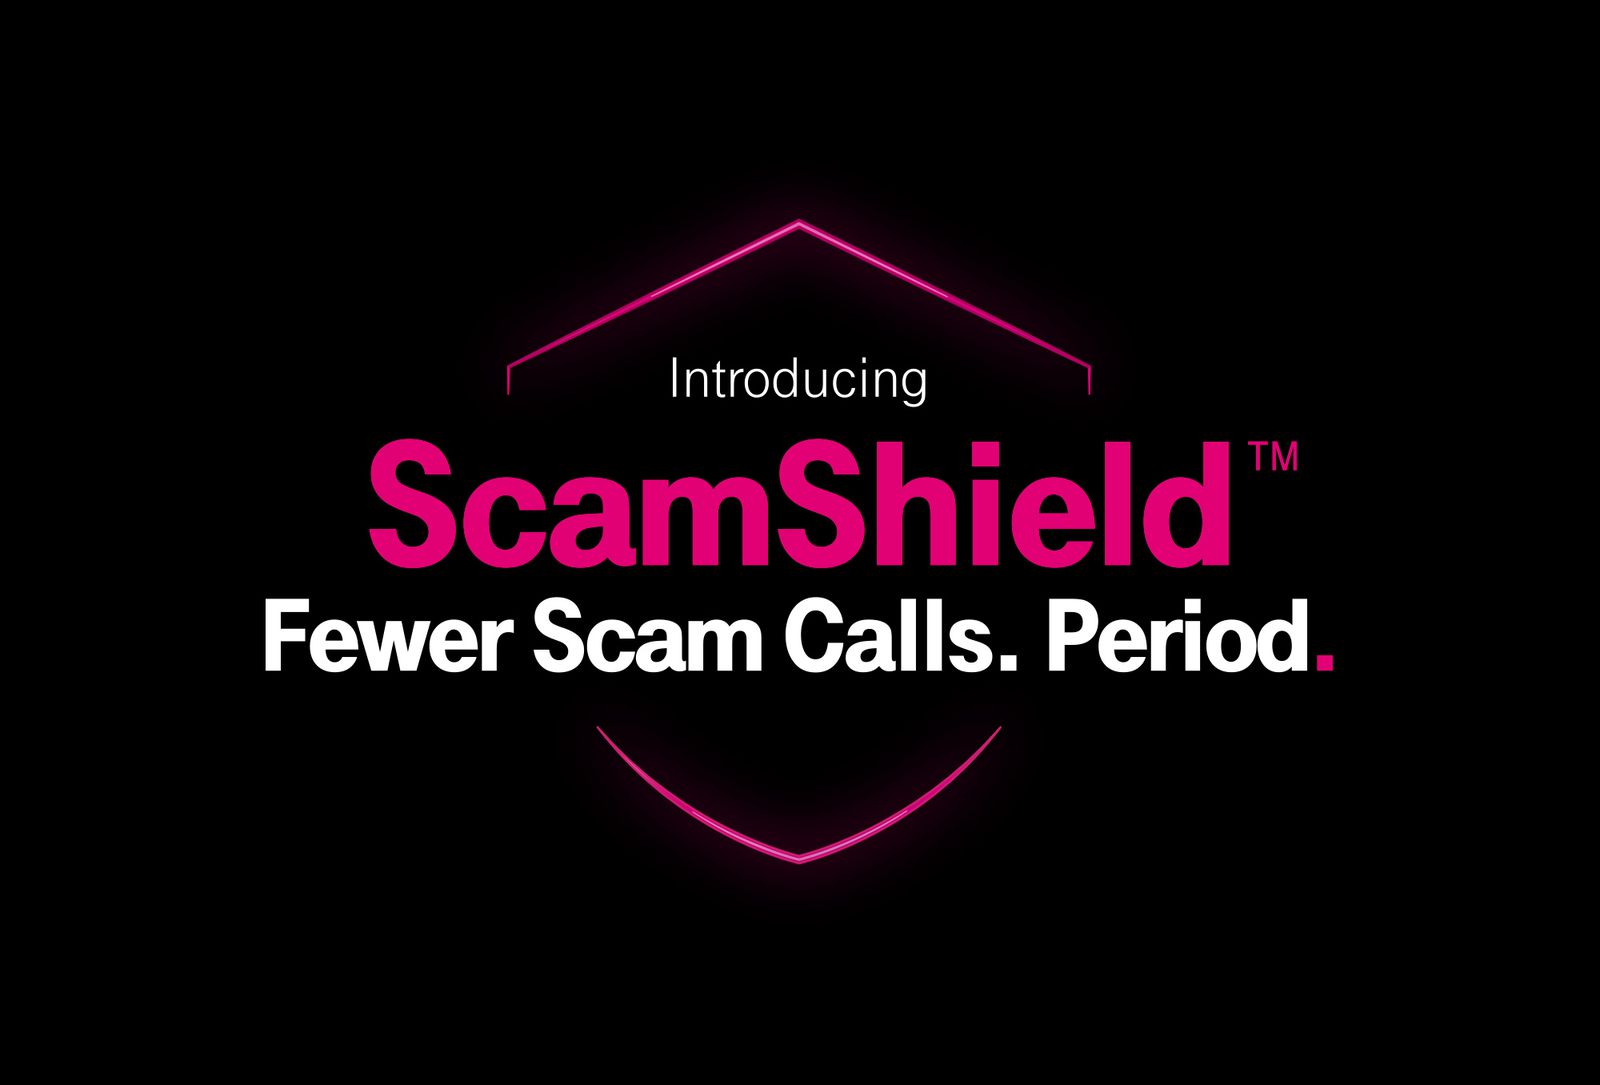 تطبيق Scamshield الجديد الذي يحميك من المكالمات و الرسائل الاحتيالية عن طريق الذكاء الإصطناعي !